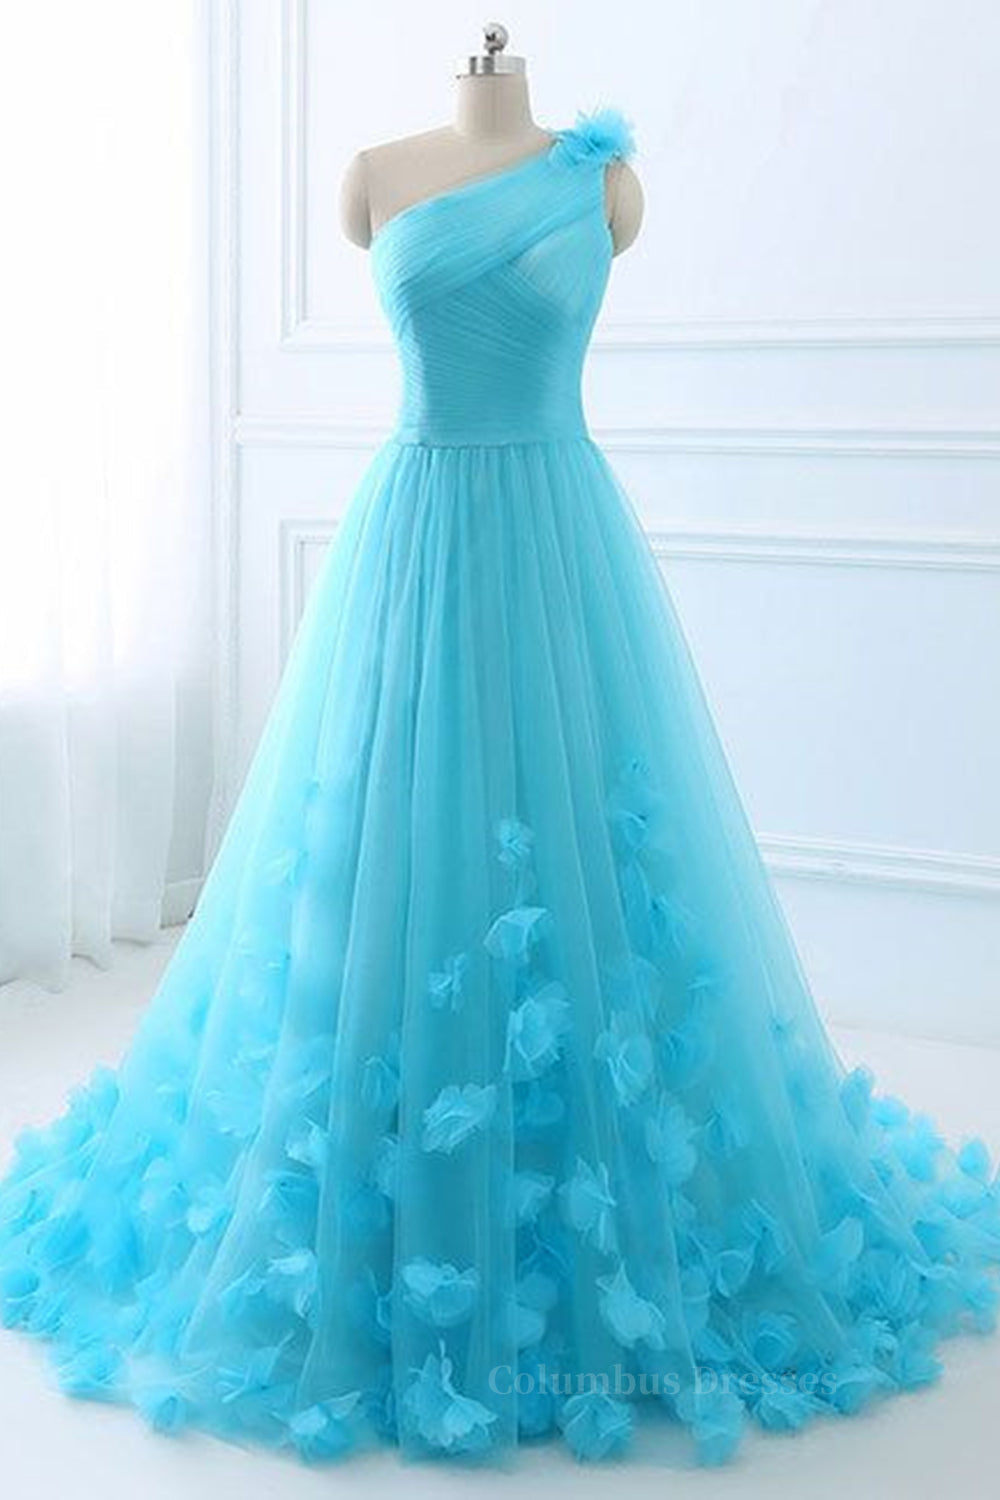 Summer Wedding Color, One Shoulder Blue 3D Flowers Long Prom Dress, Blue Floral Formal Evening Dress